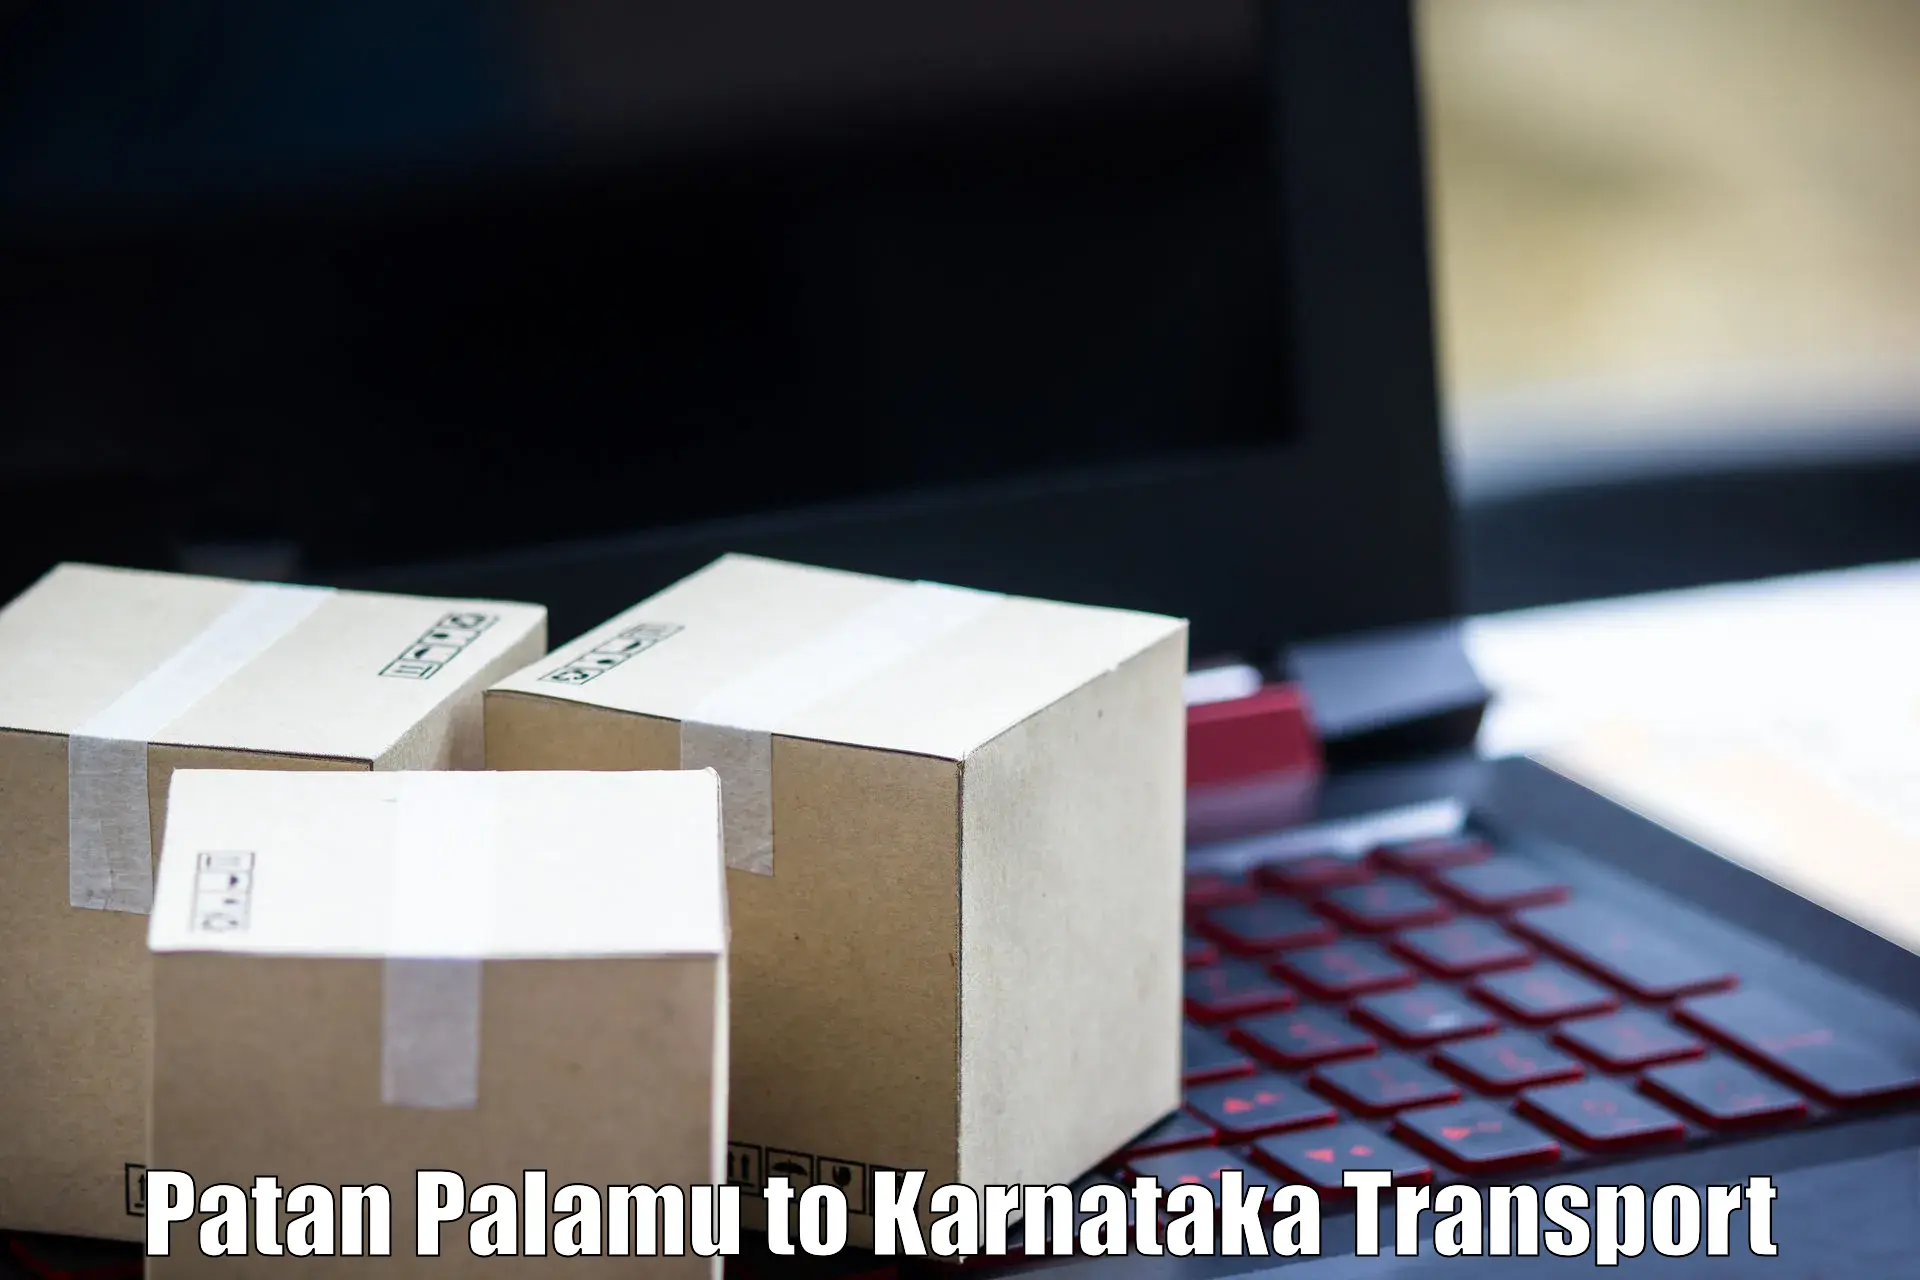 Daily transport service Patan Palamu to Karnataka